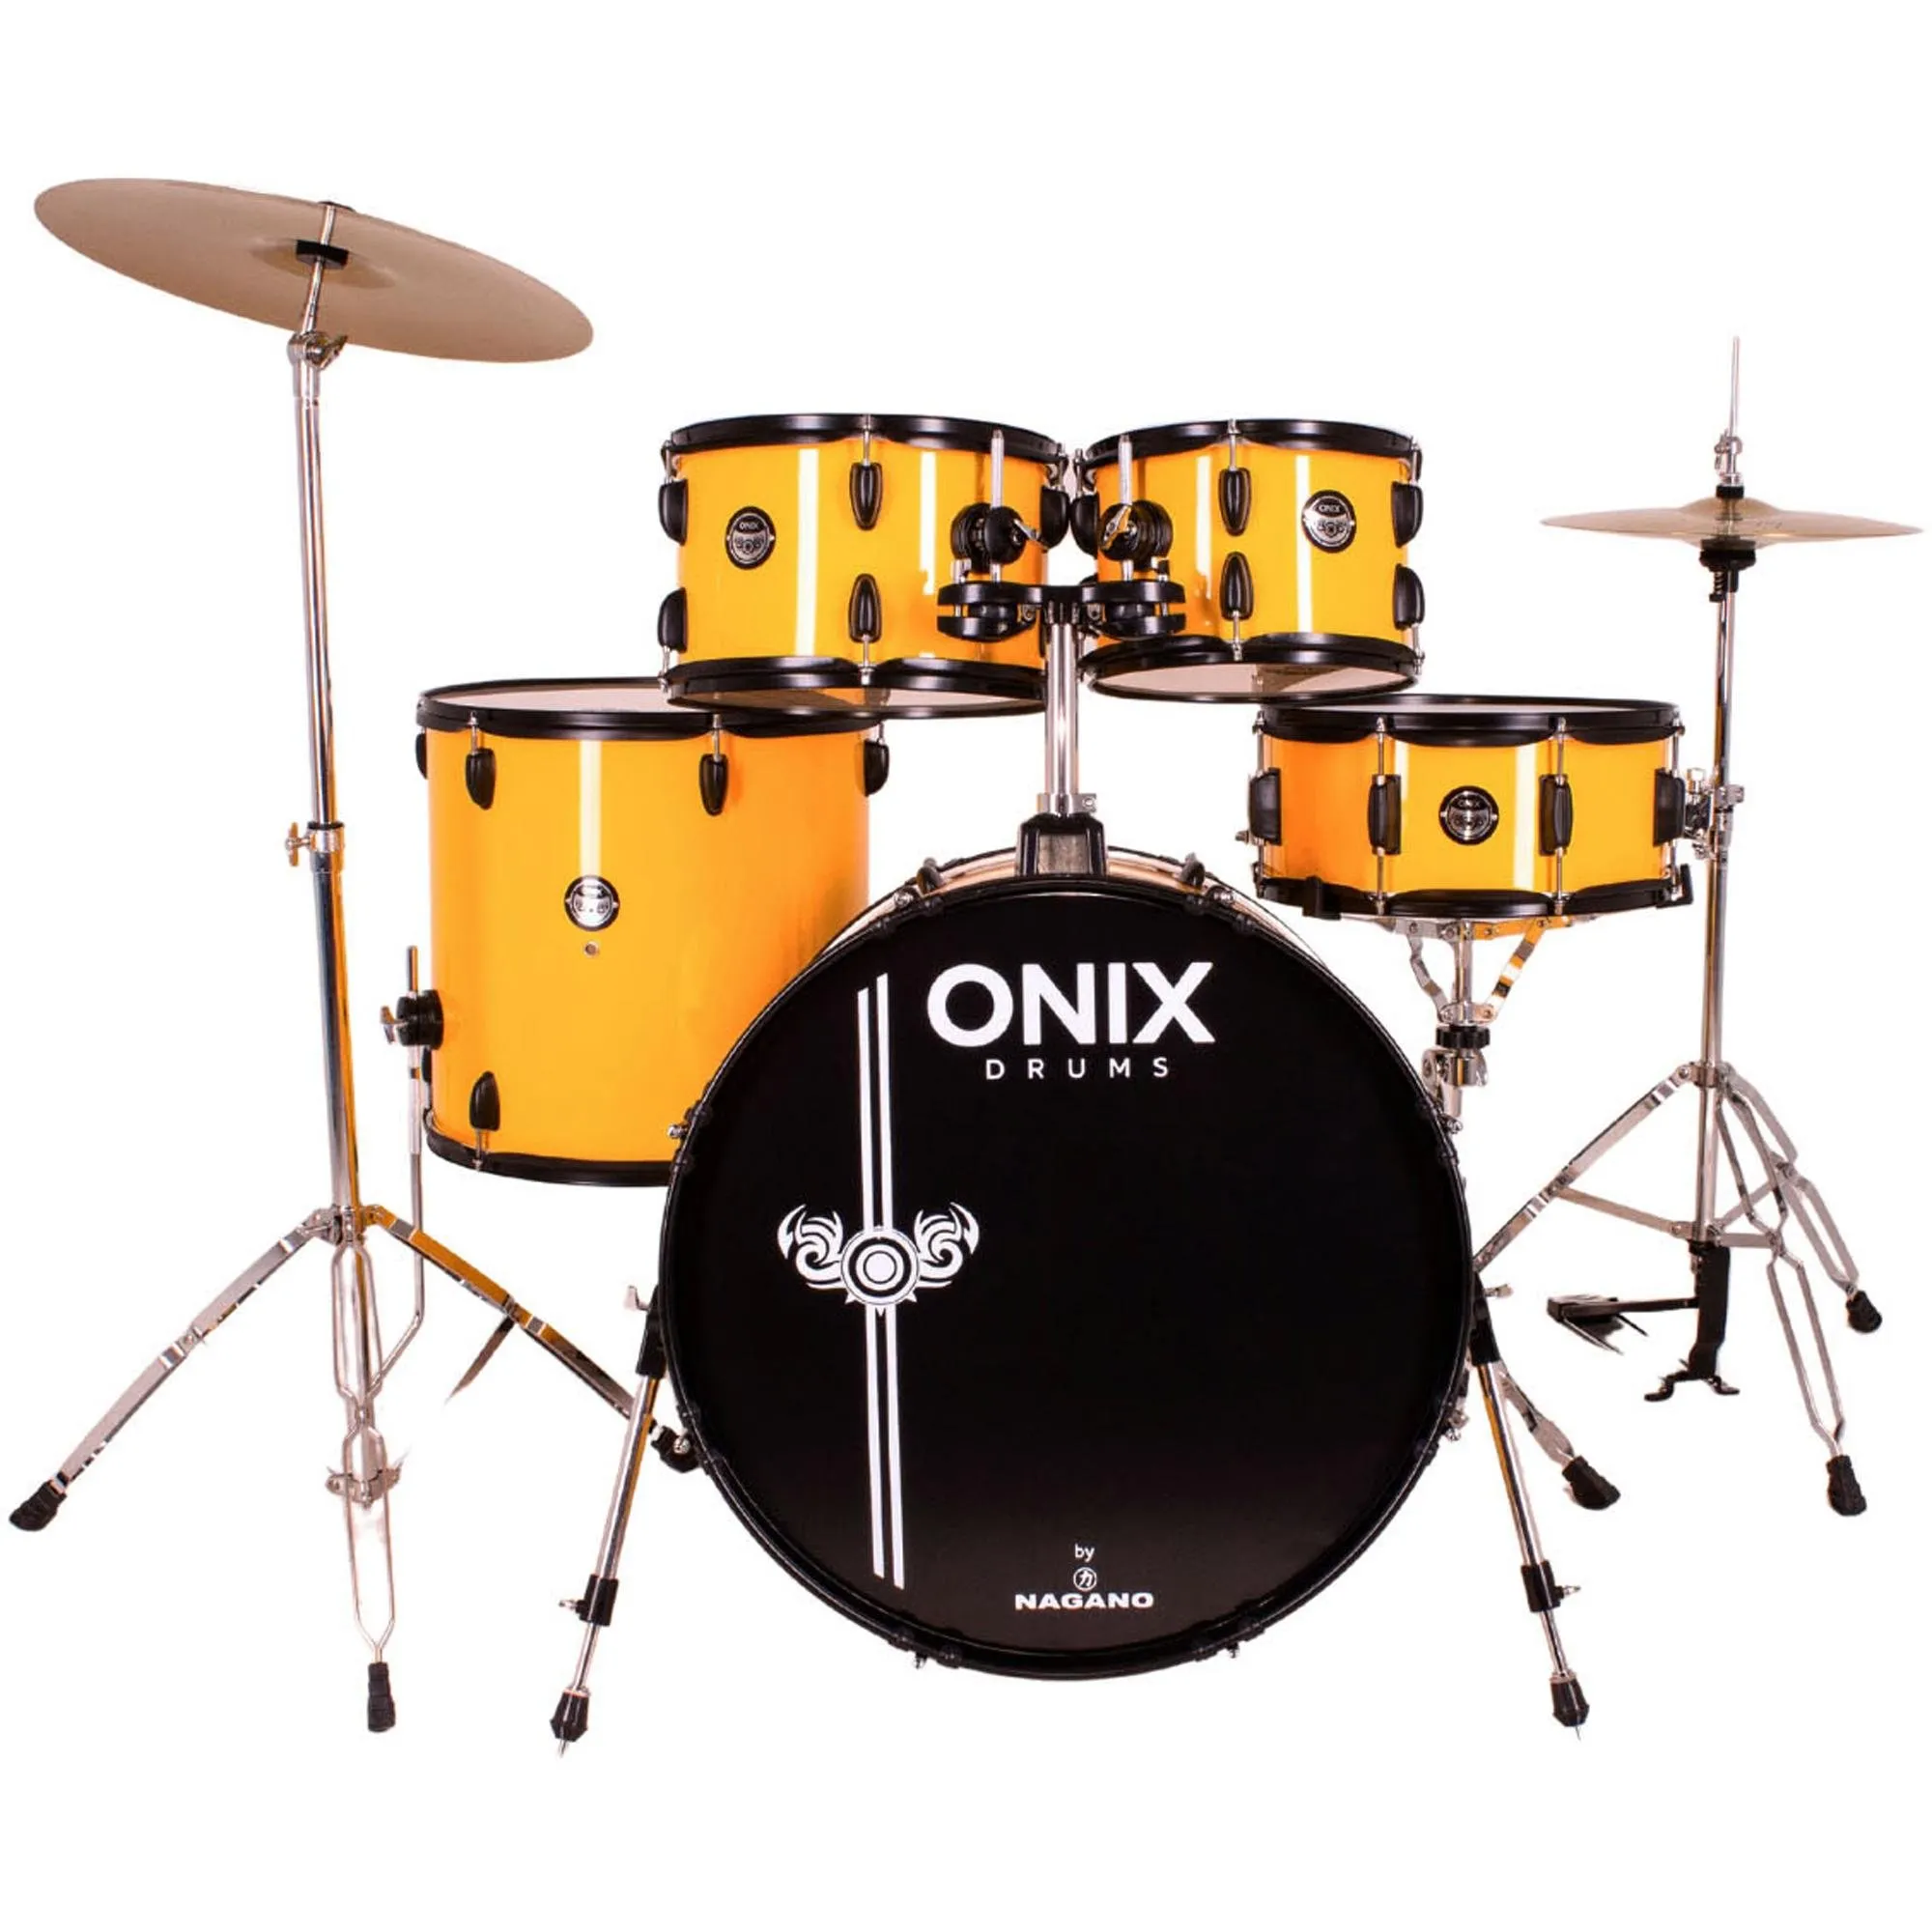 Bateria Acústica Nagano Onix Drums Smart 22\" Big Yellow por 3.609,99 à vista no boleto/pix ou parcele em até 12x sem juros. Compre na loja Mundomax!